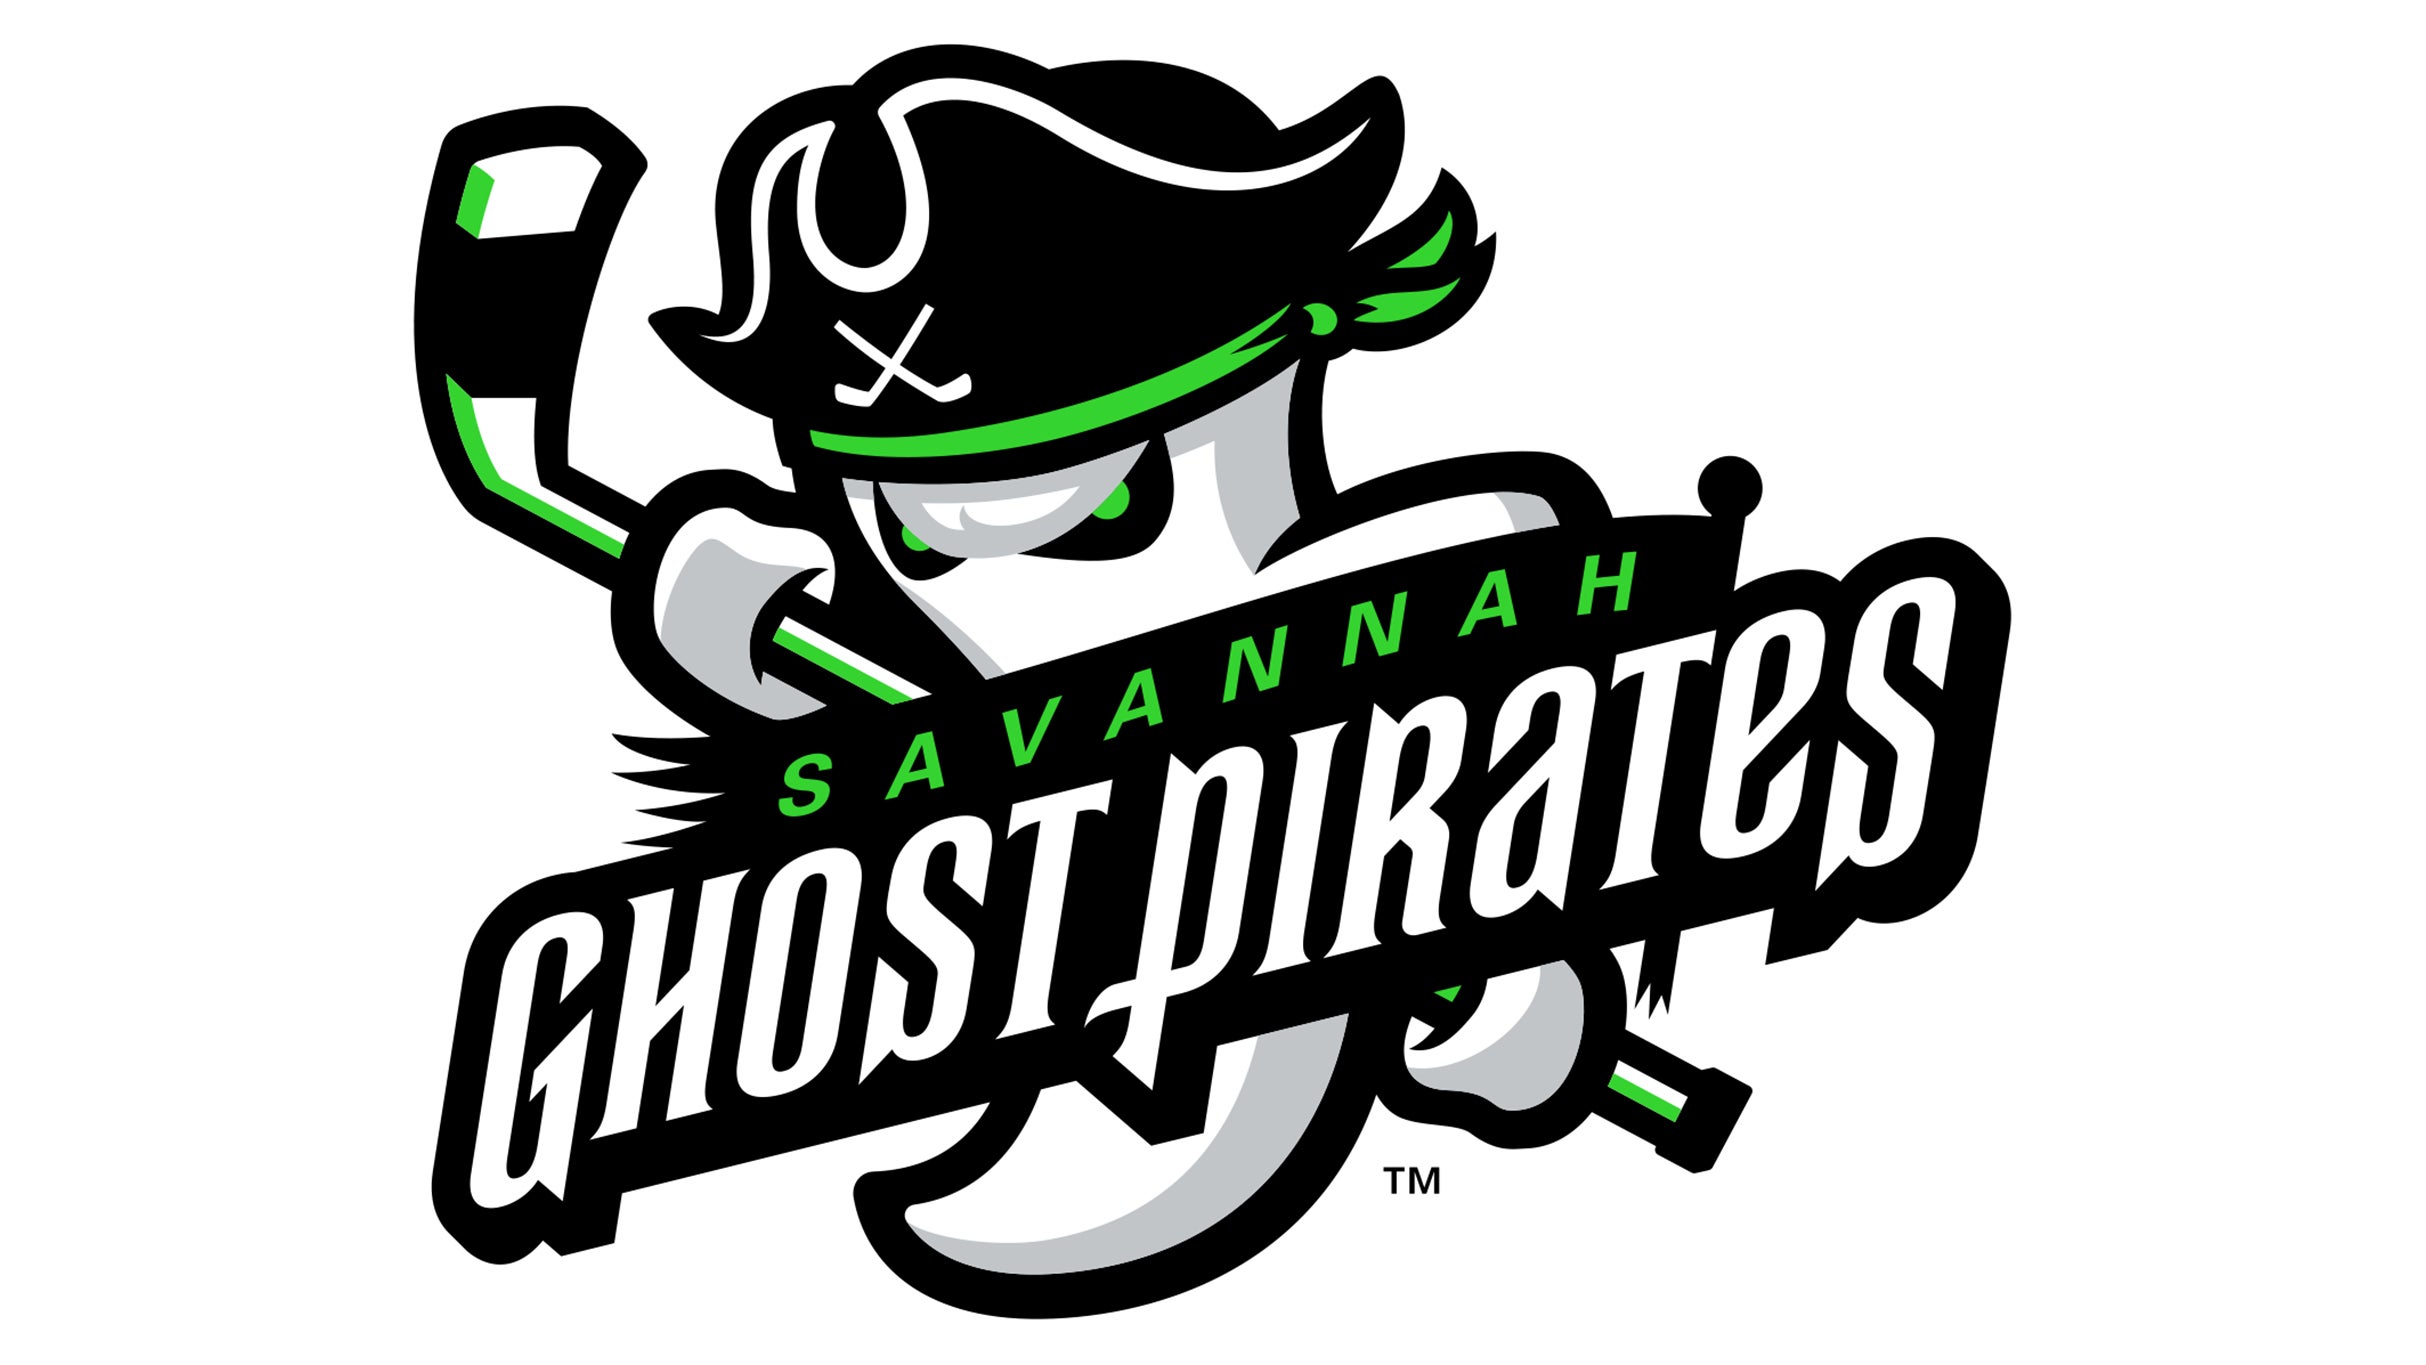 PREVIEW: 1/5 - Atlanta Gladiators @ Savannah Ghost Pirates